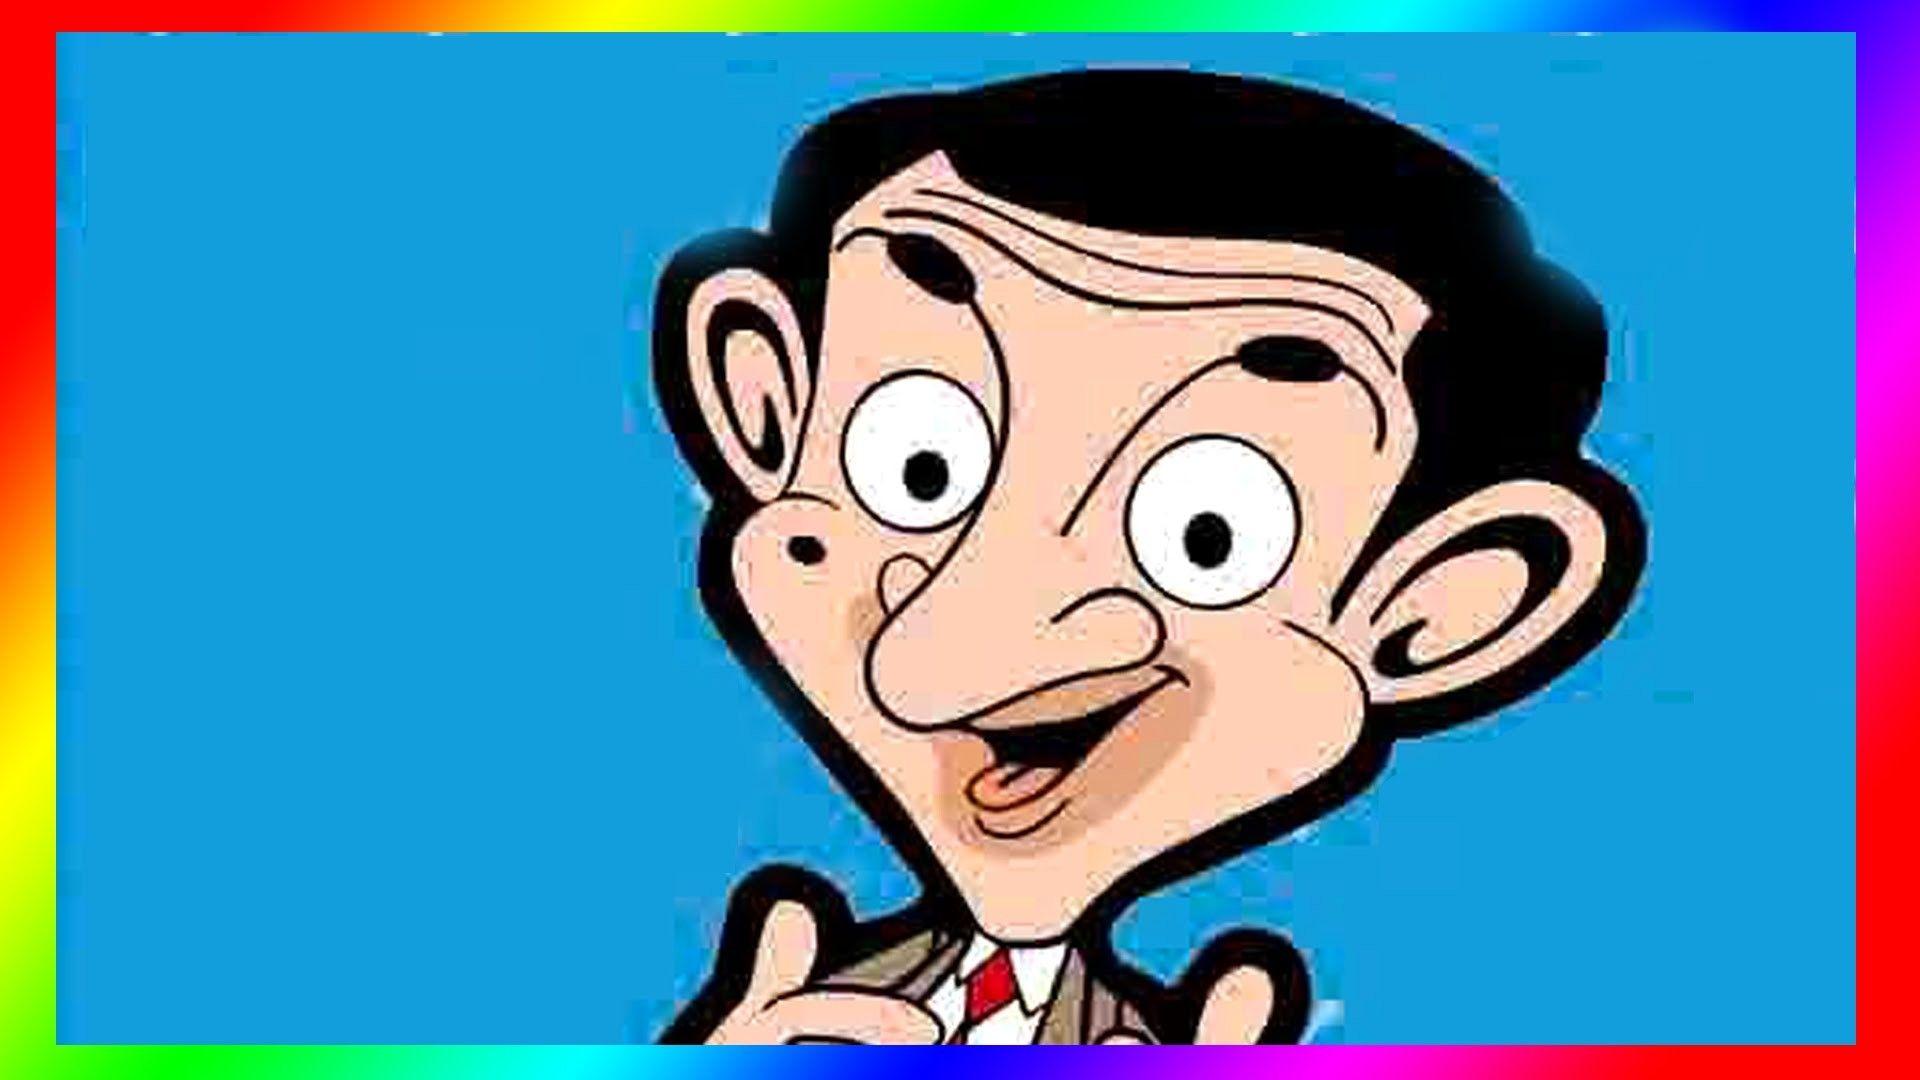 Mr. Bean Cartoon Wallpapers - Top Những Hình Ảnh Đẹp